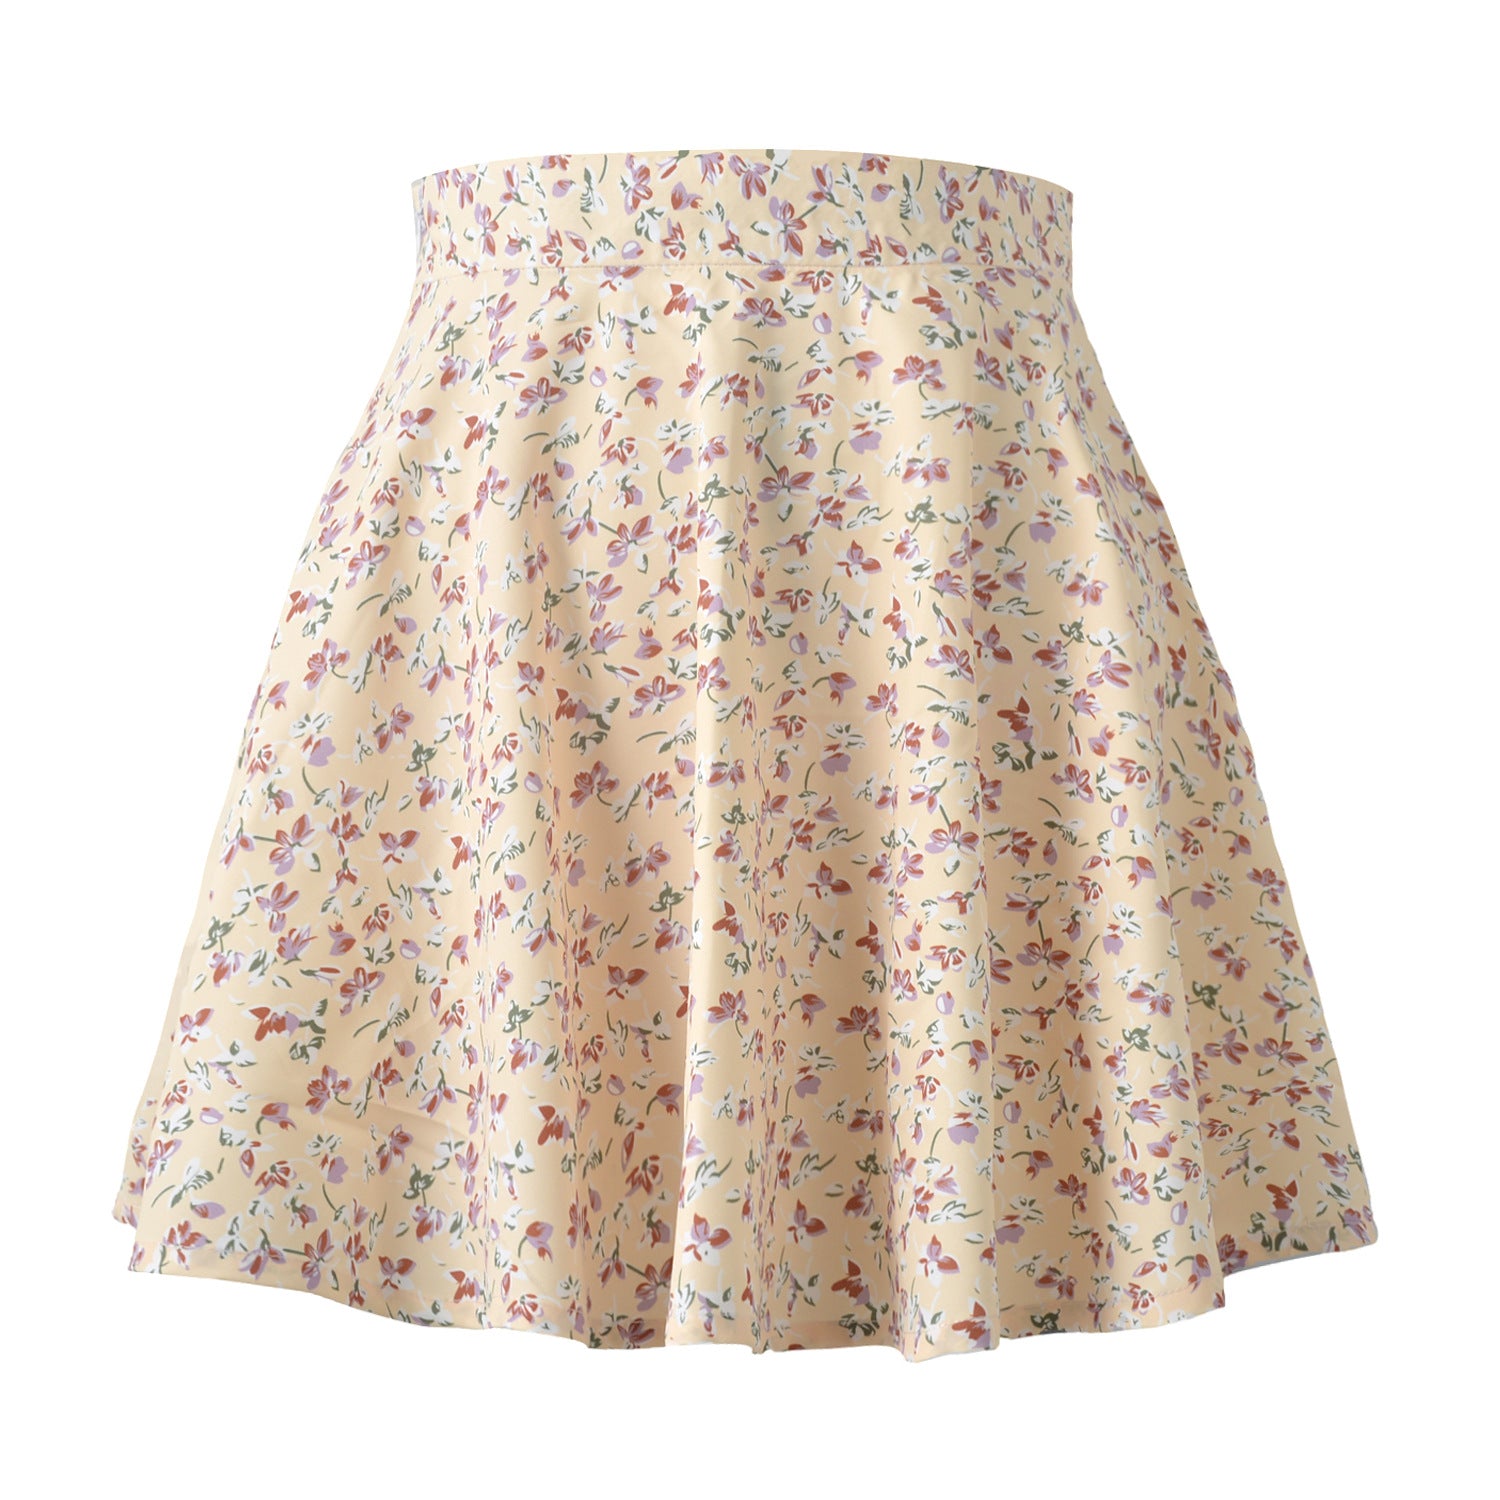 Women's Floral Sweet High Waist Invisible Zipper Chiffon Printed Short Skirt